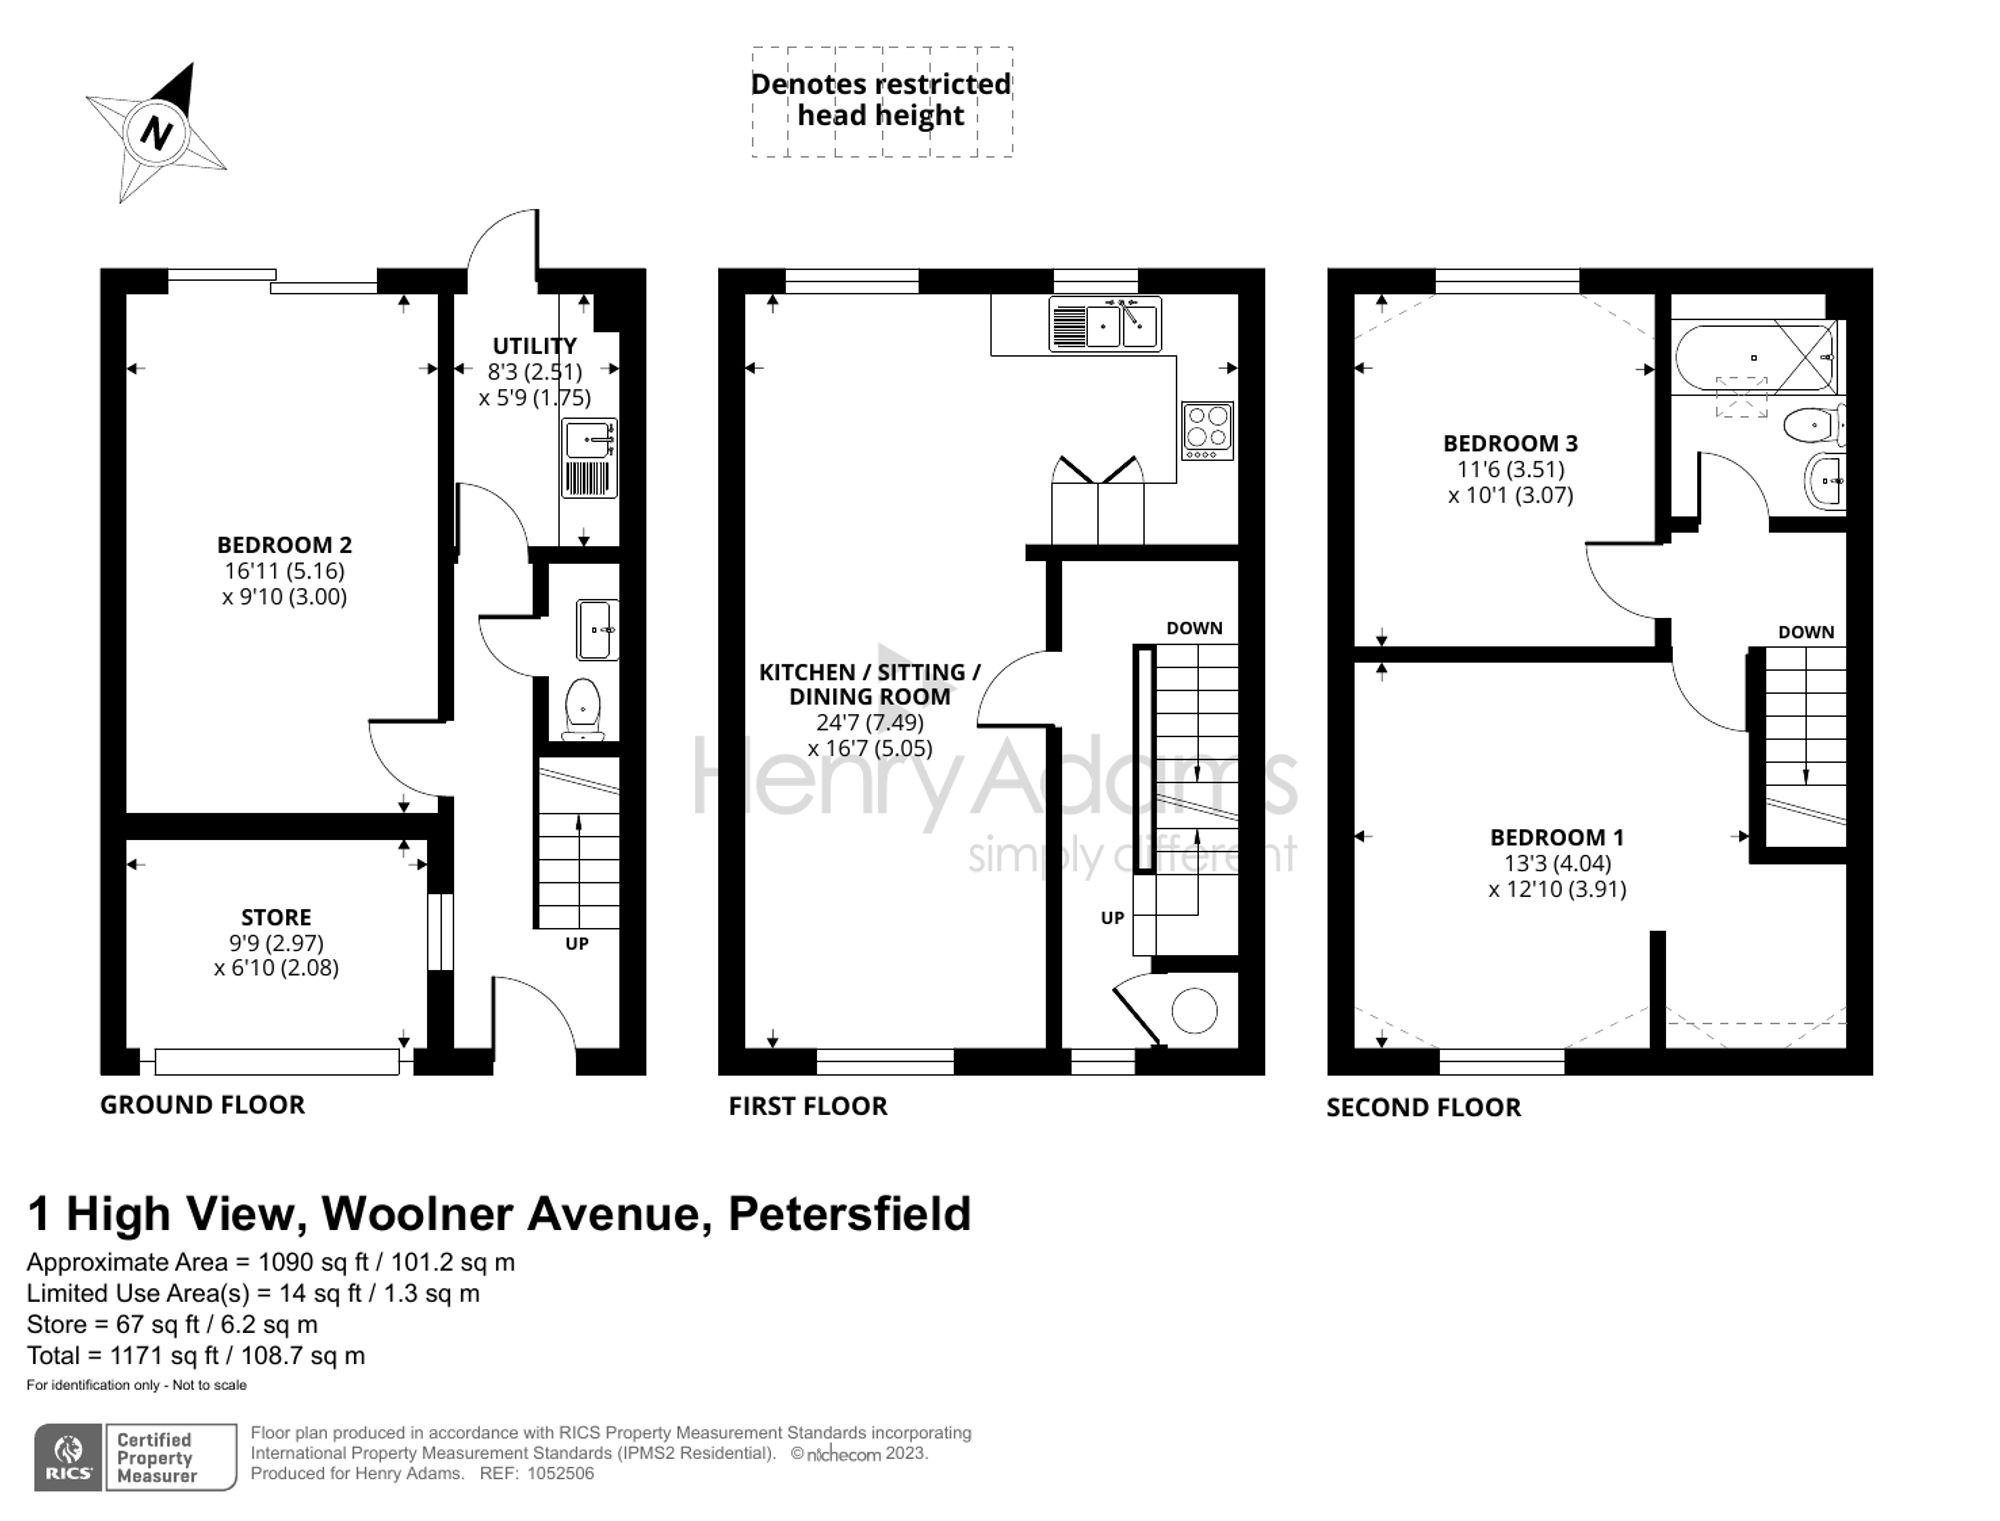 Woolner Avenue, Petersfield, GU32 floorplans